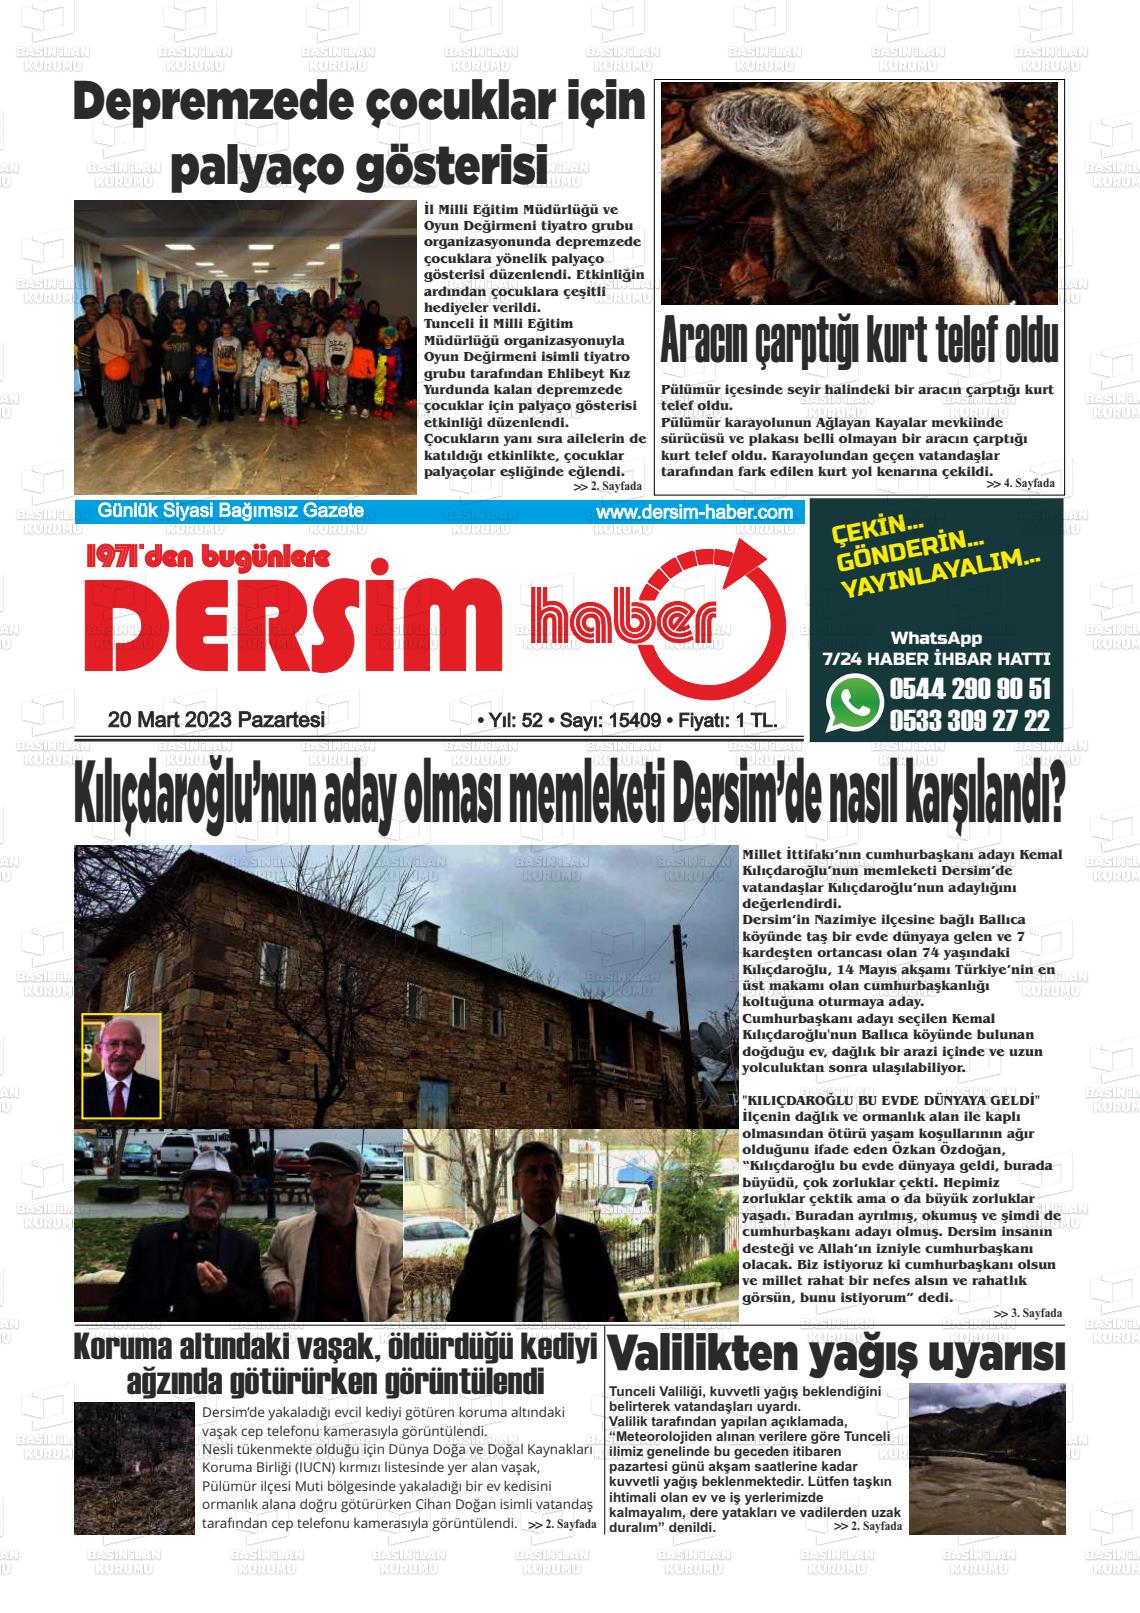 20 Mart 2023 DERSİM HABER Gazete Manşeti